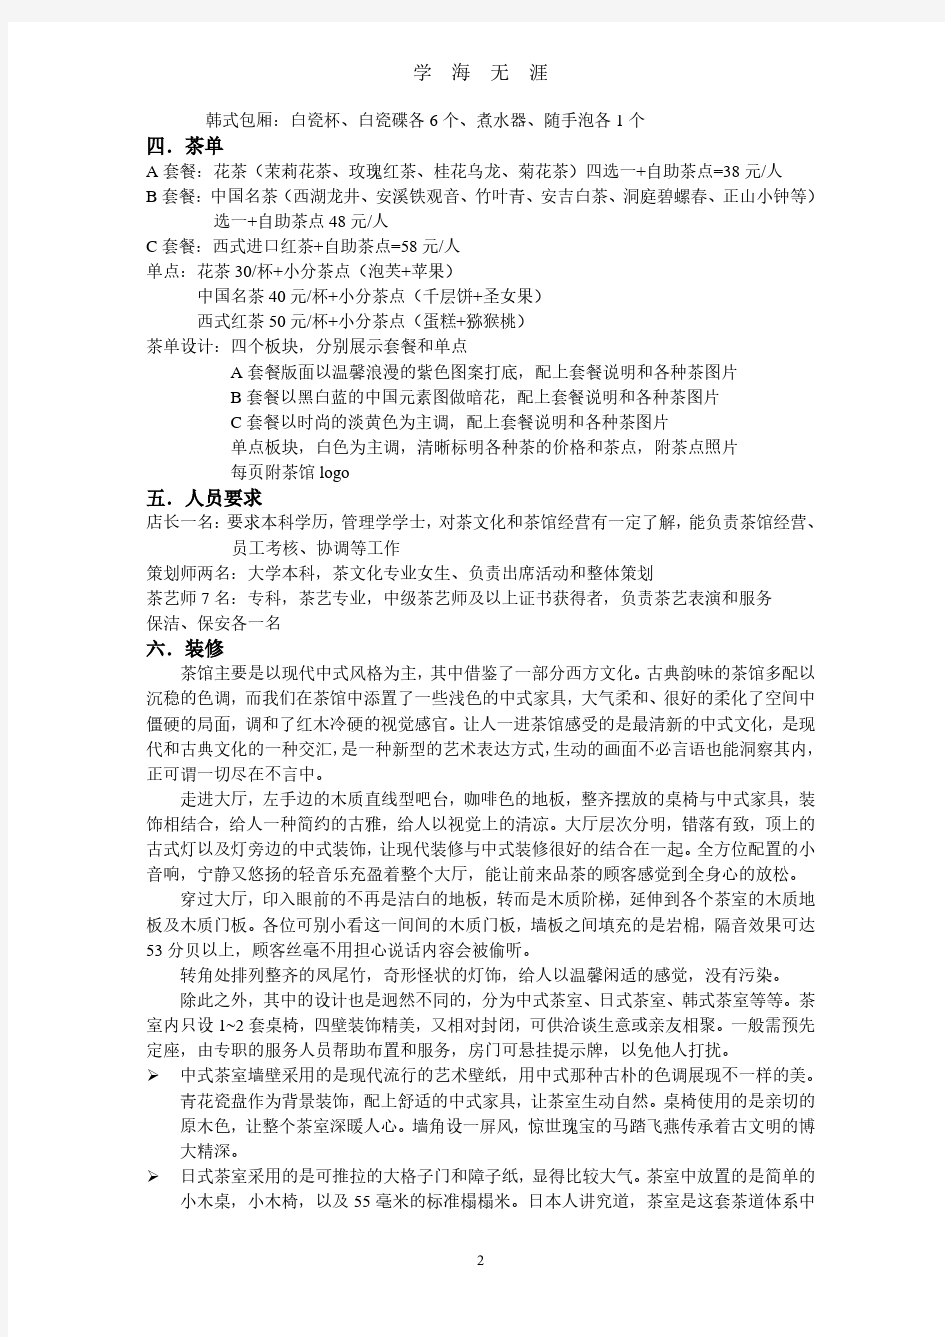 茶馆计划书(2020年7月整理).pdf